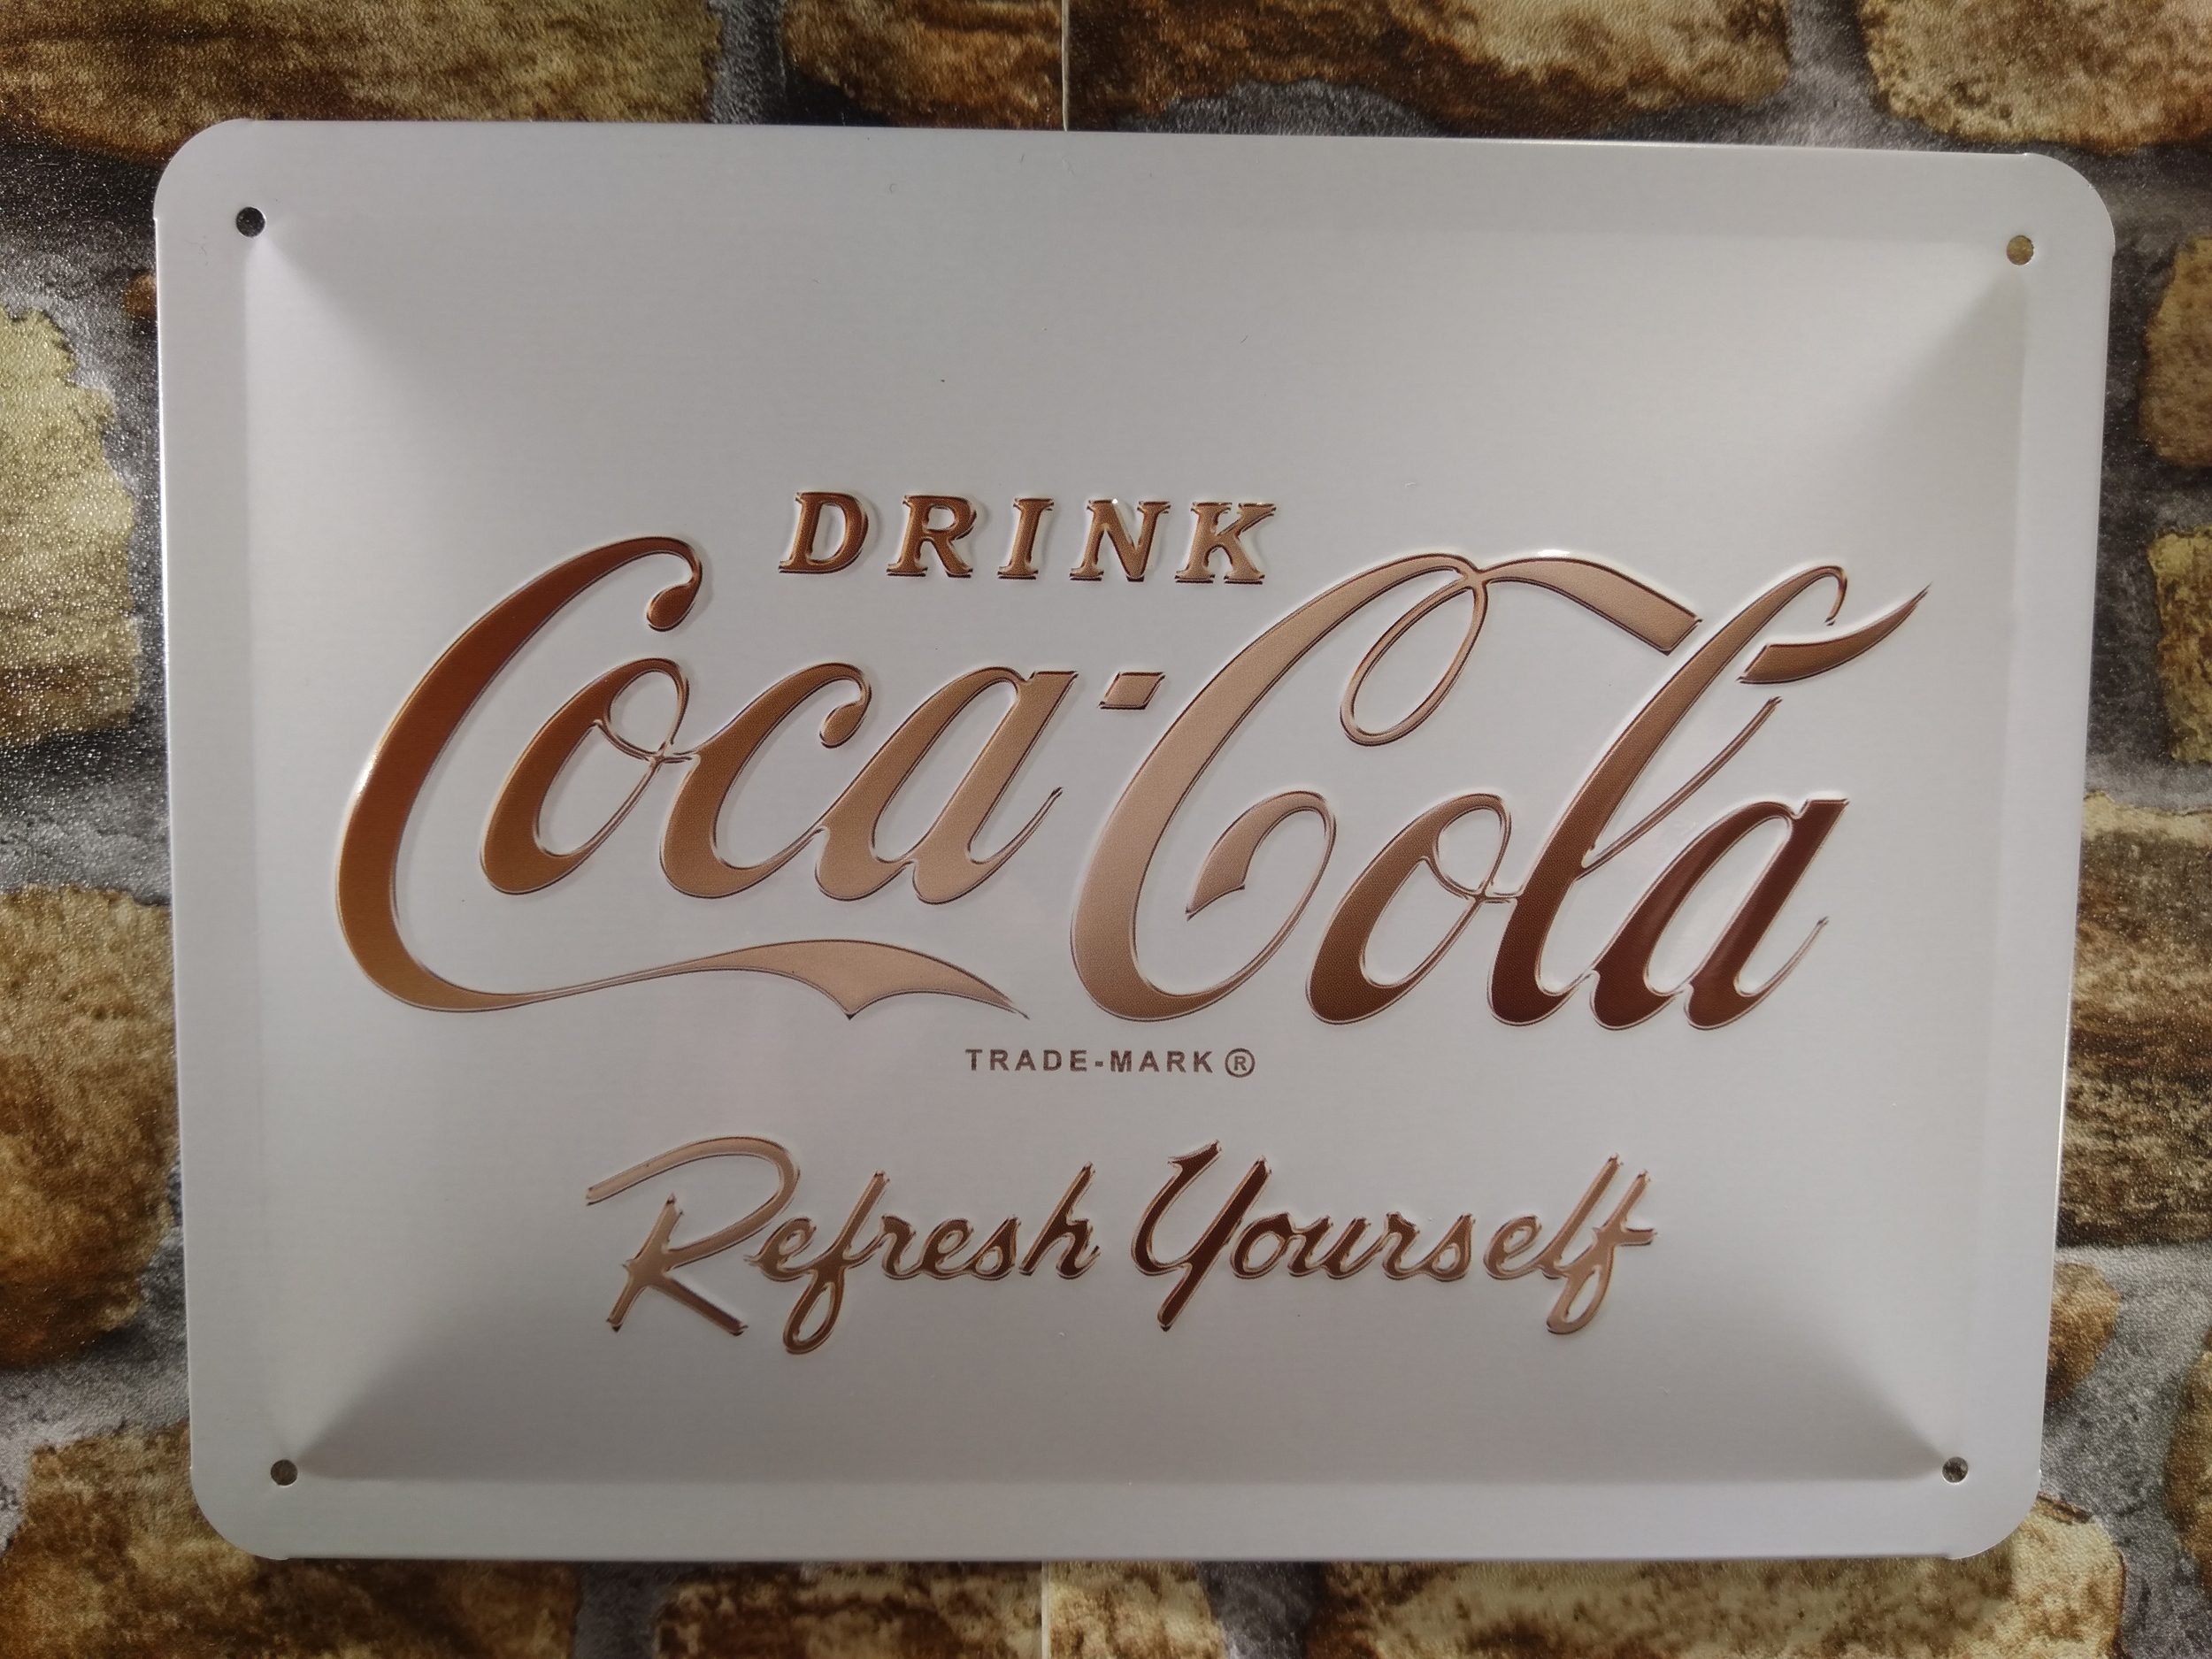 plaque déco publicitaire coca-cola